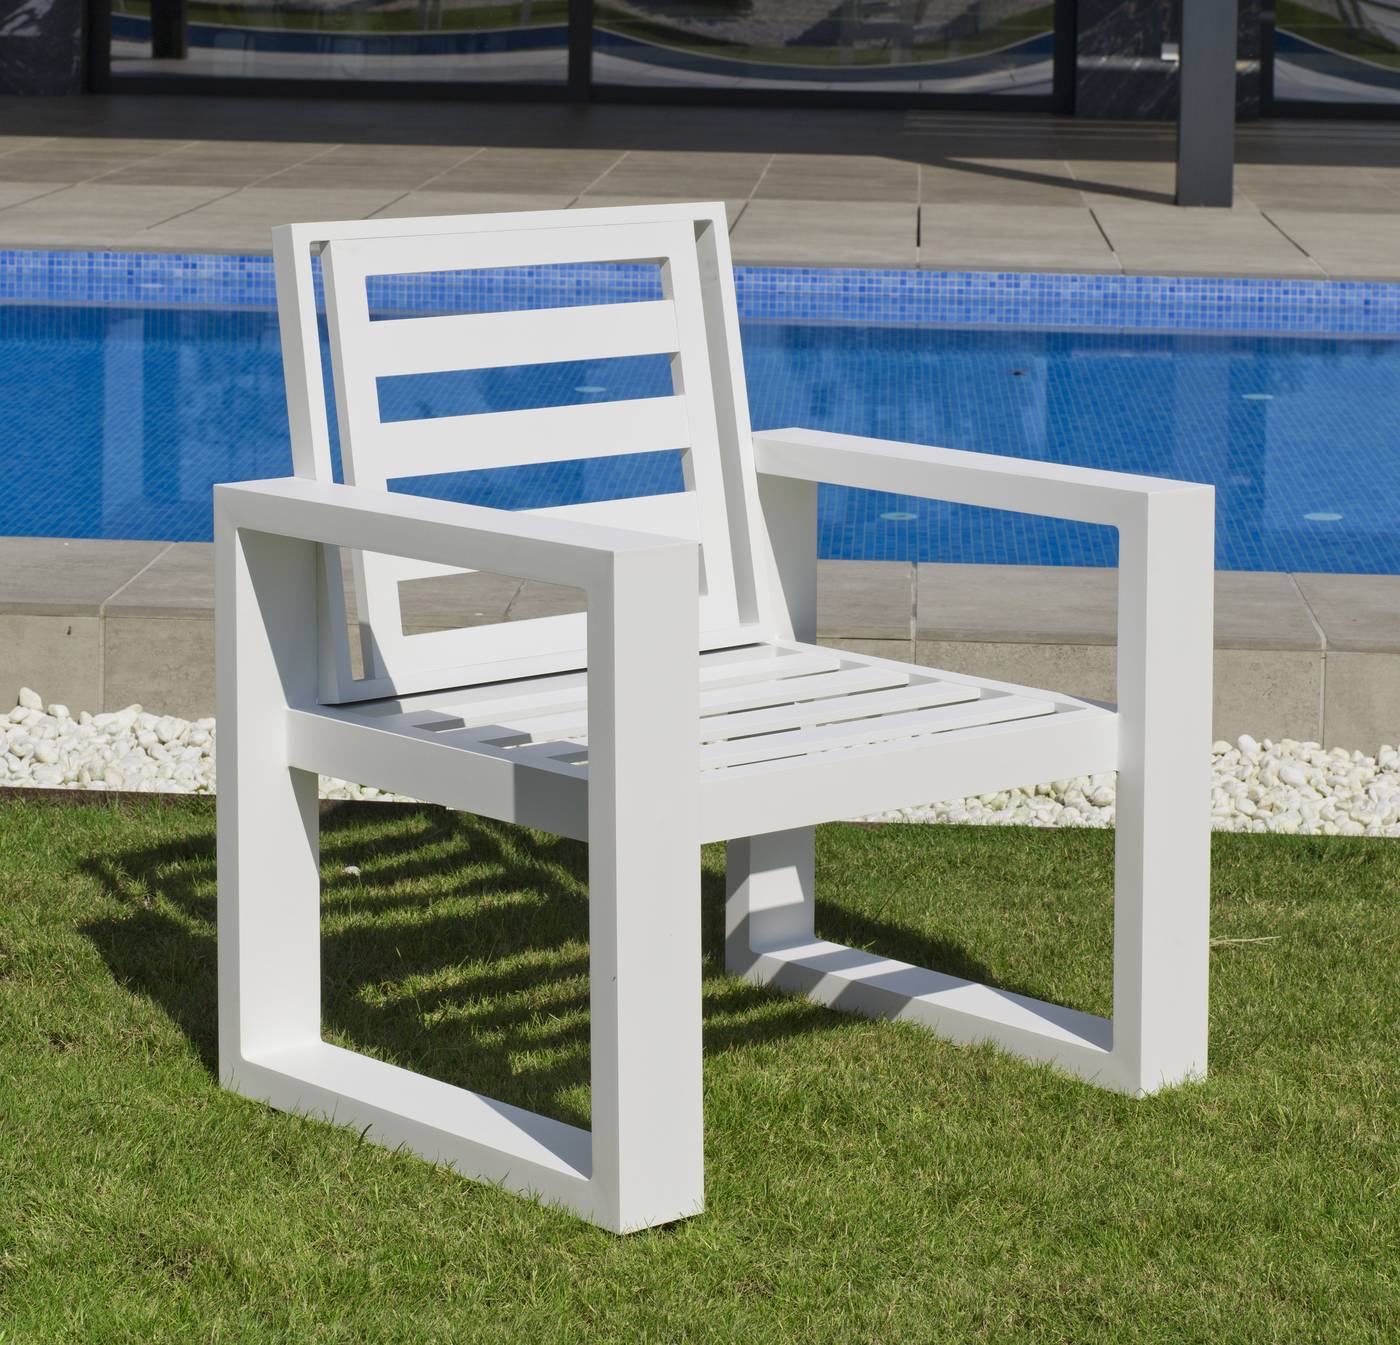 Sillón Aluminio Coloseo-30 - Lujoso sillón de comedor para jardín o terraza. 100% aluminio color blanco, antracita o champagne.